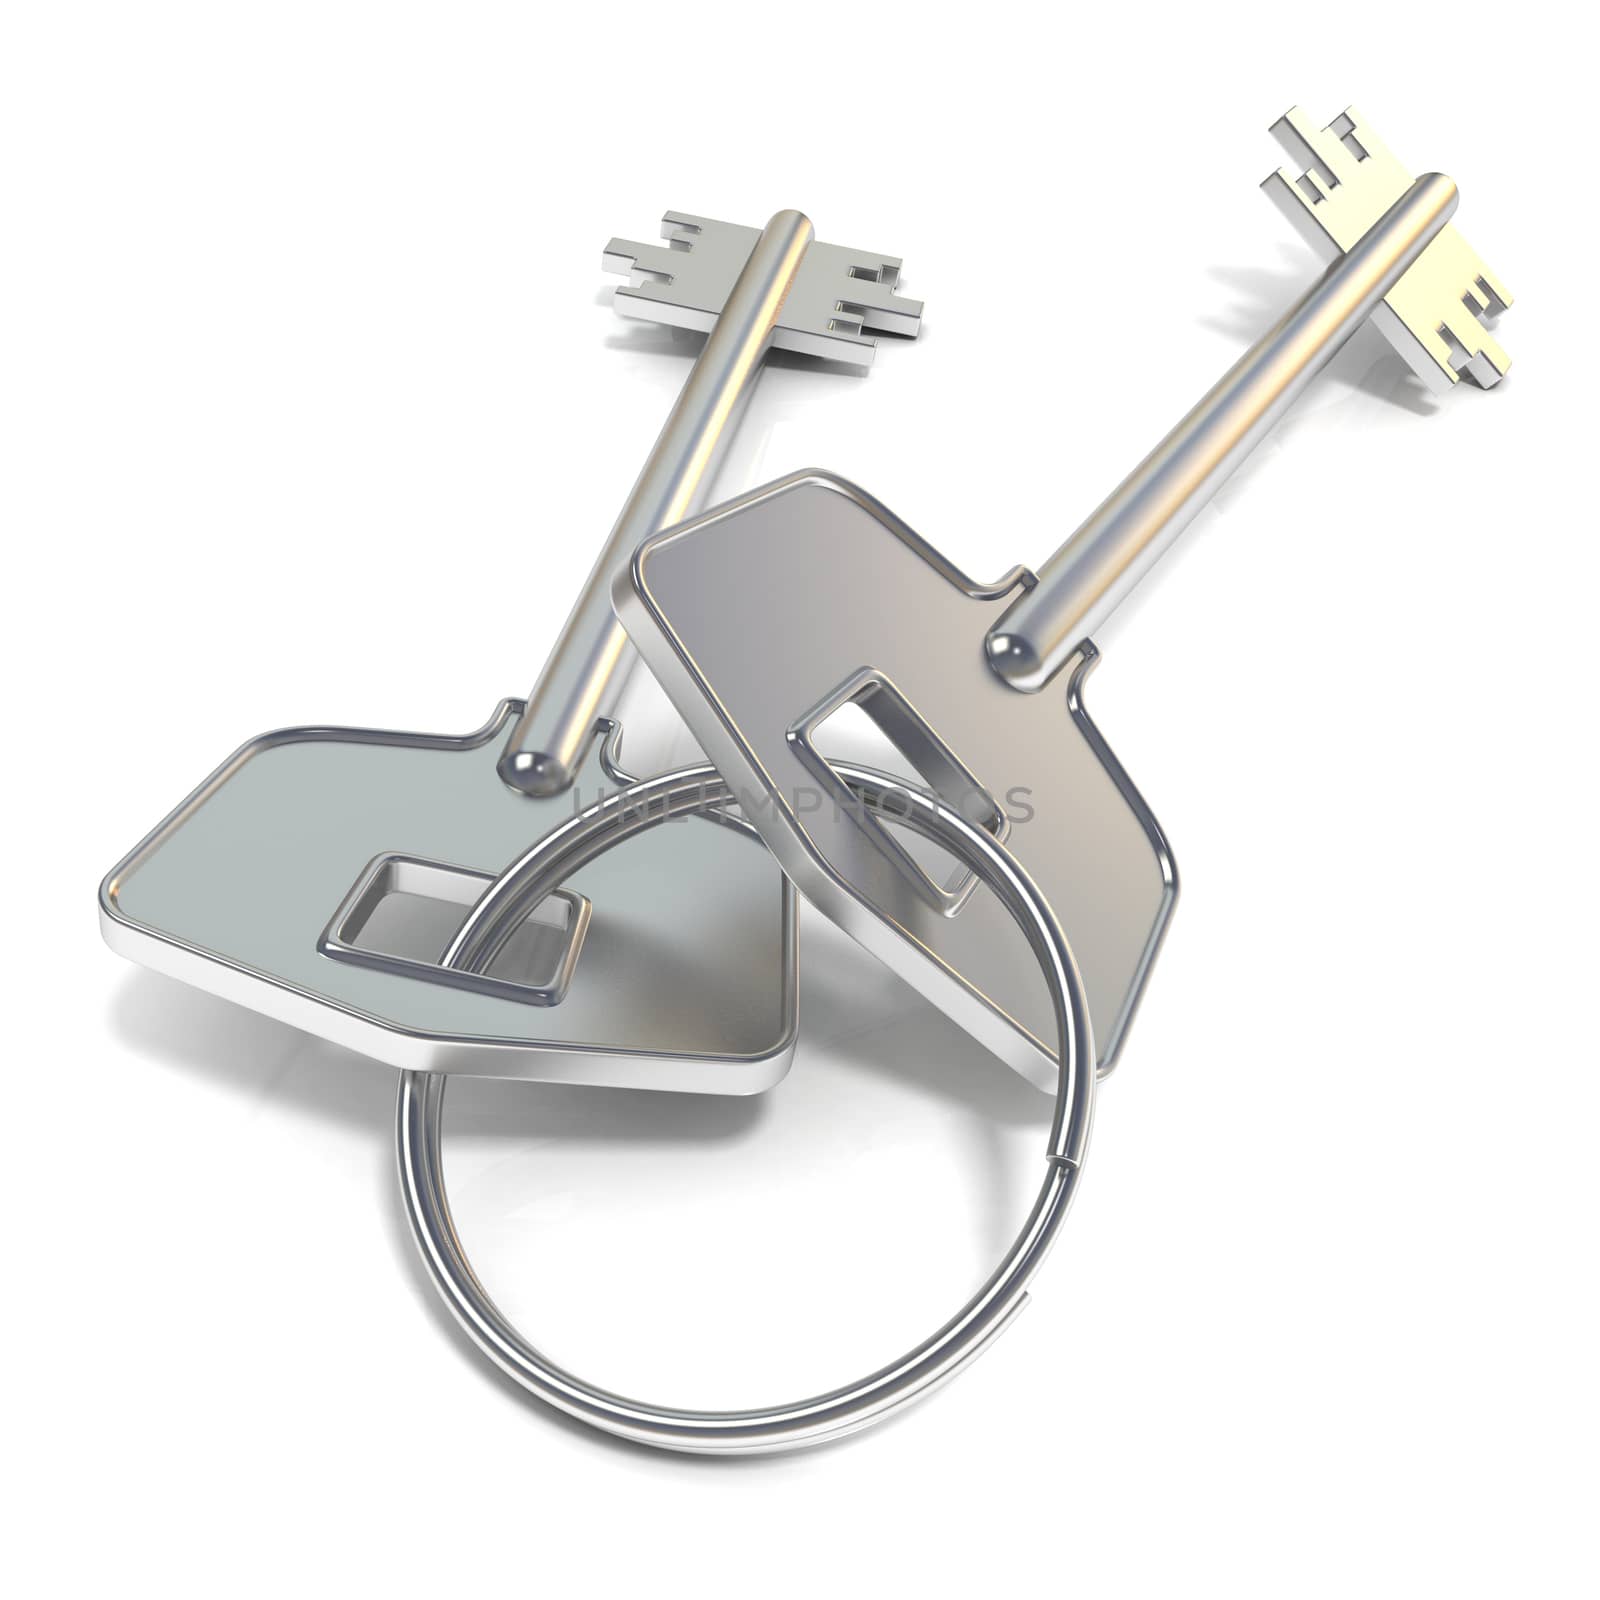 Door keys. 3D render illustration isolated on white background